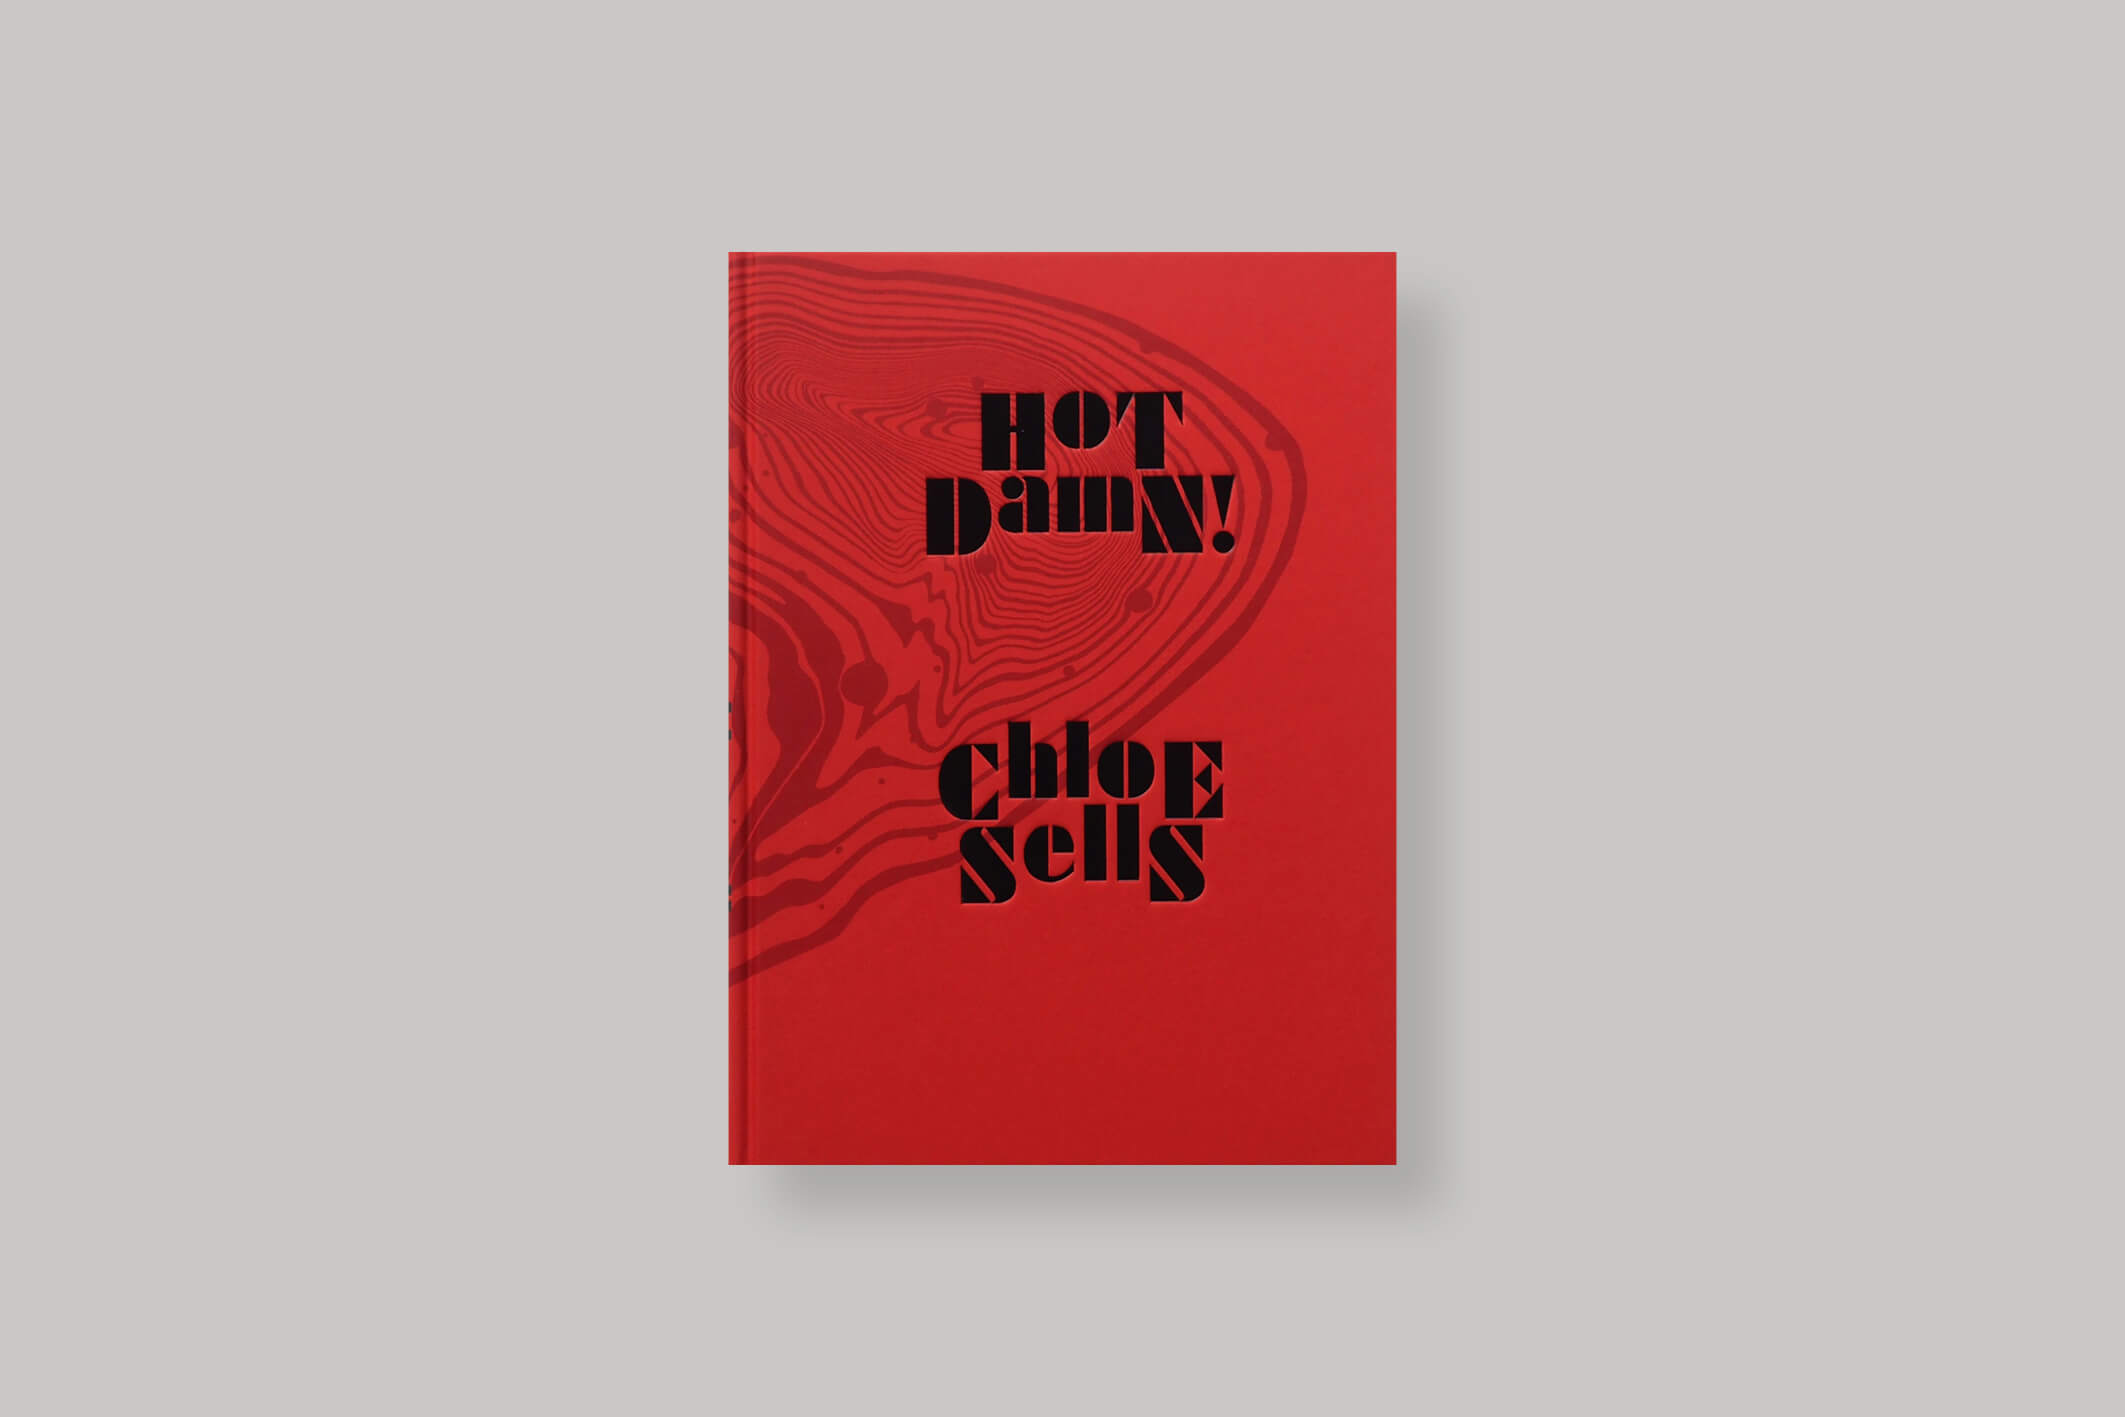 hot-damn-chloe-sells-gost-books-cover